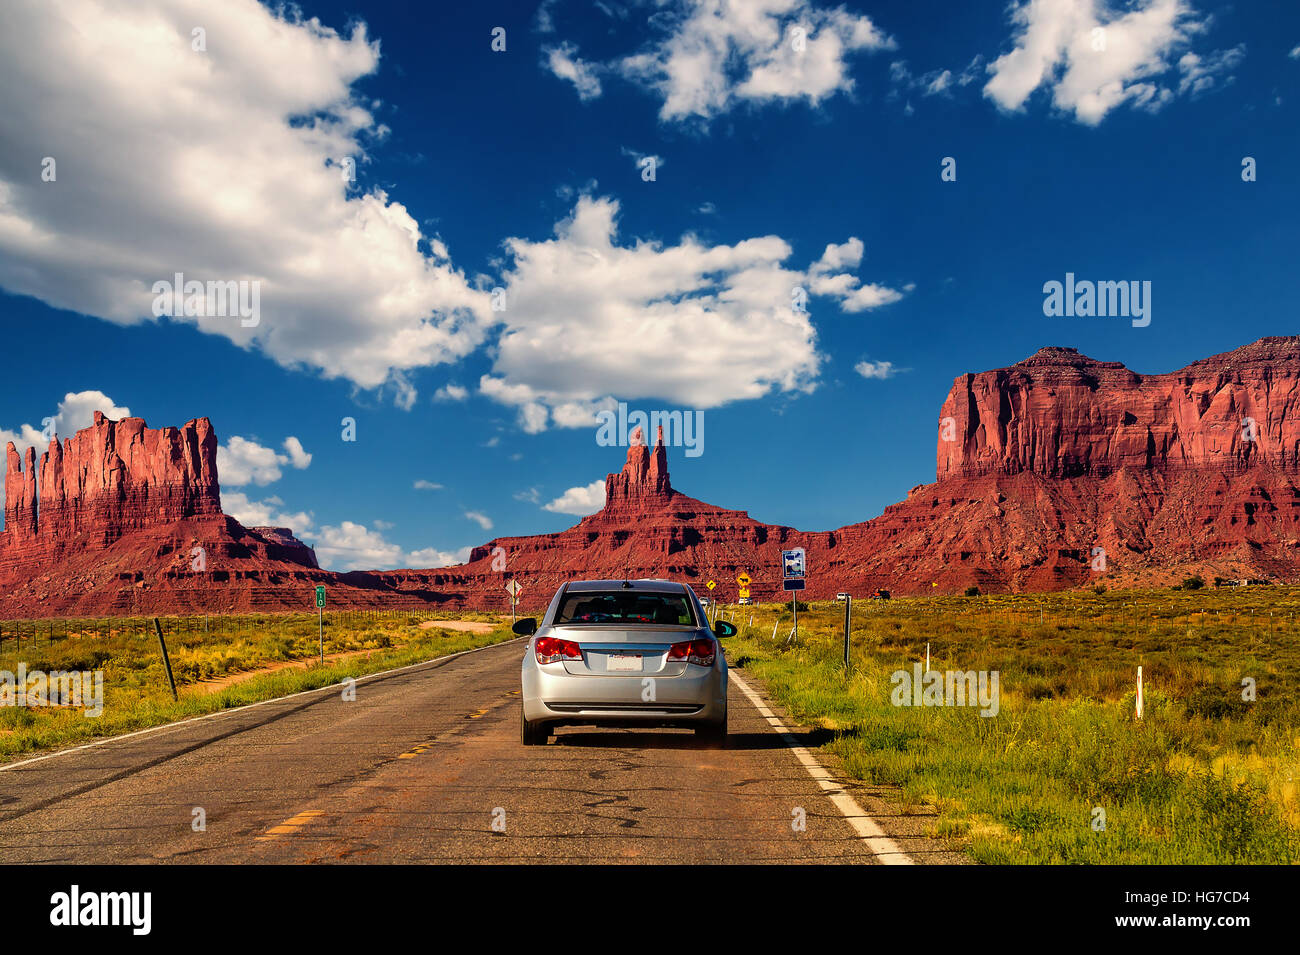 Autobahn in Monument Valley, Utah / Arizona, USA - Bild mit Straße und Autos fahren in Richtung der Hügel. Stockfoto